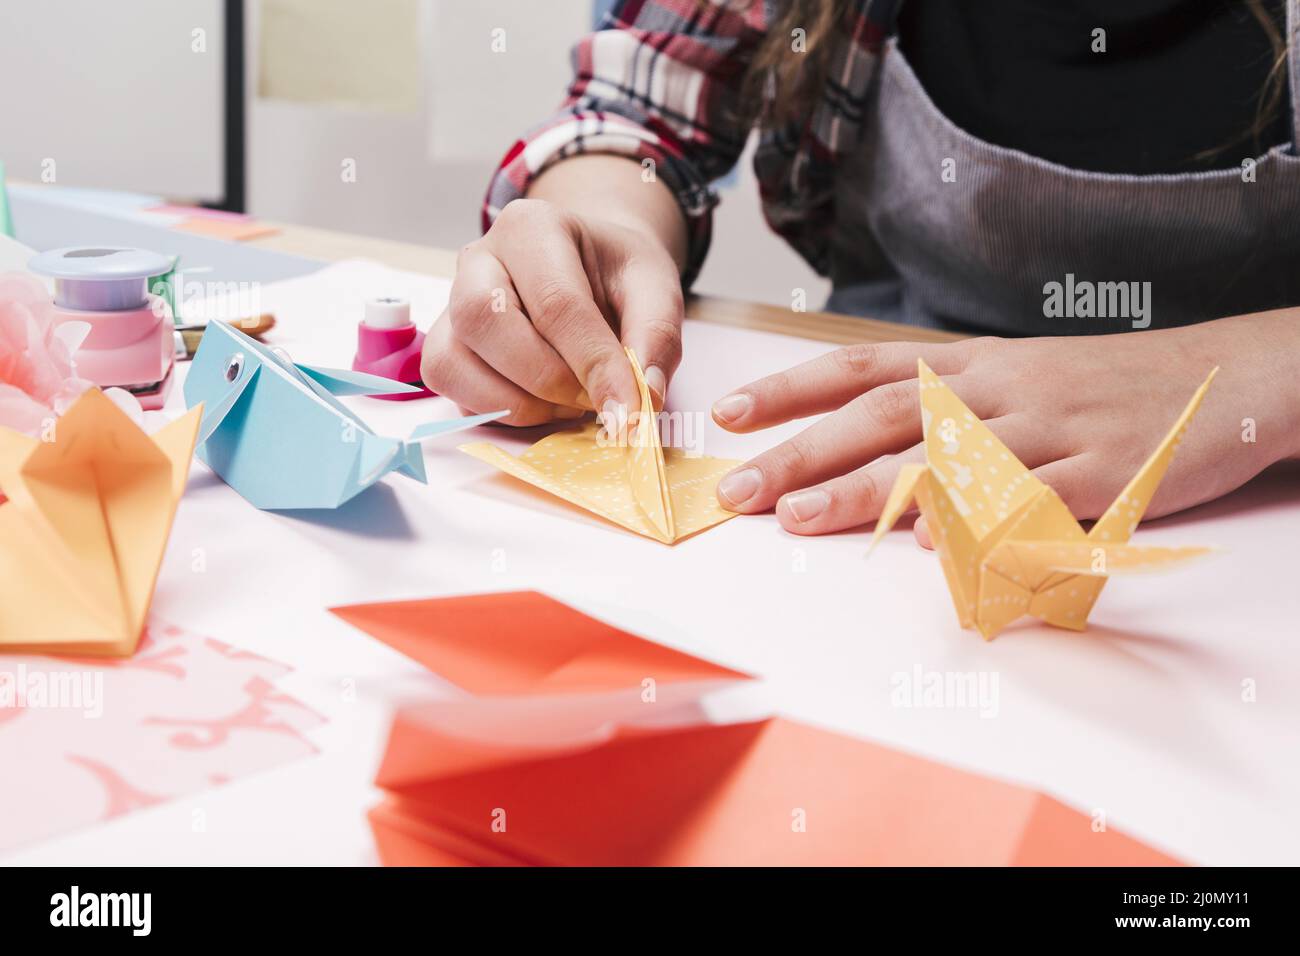 Primer plano mujer mano hacer arte creativo artesanía utilizando papel origami Foto de stock